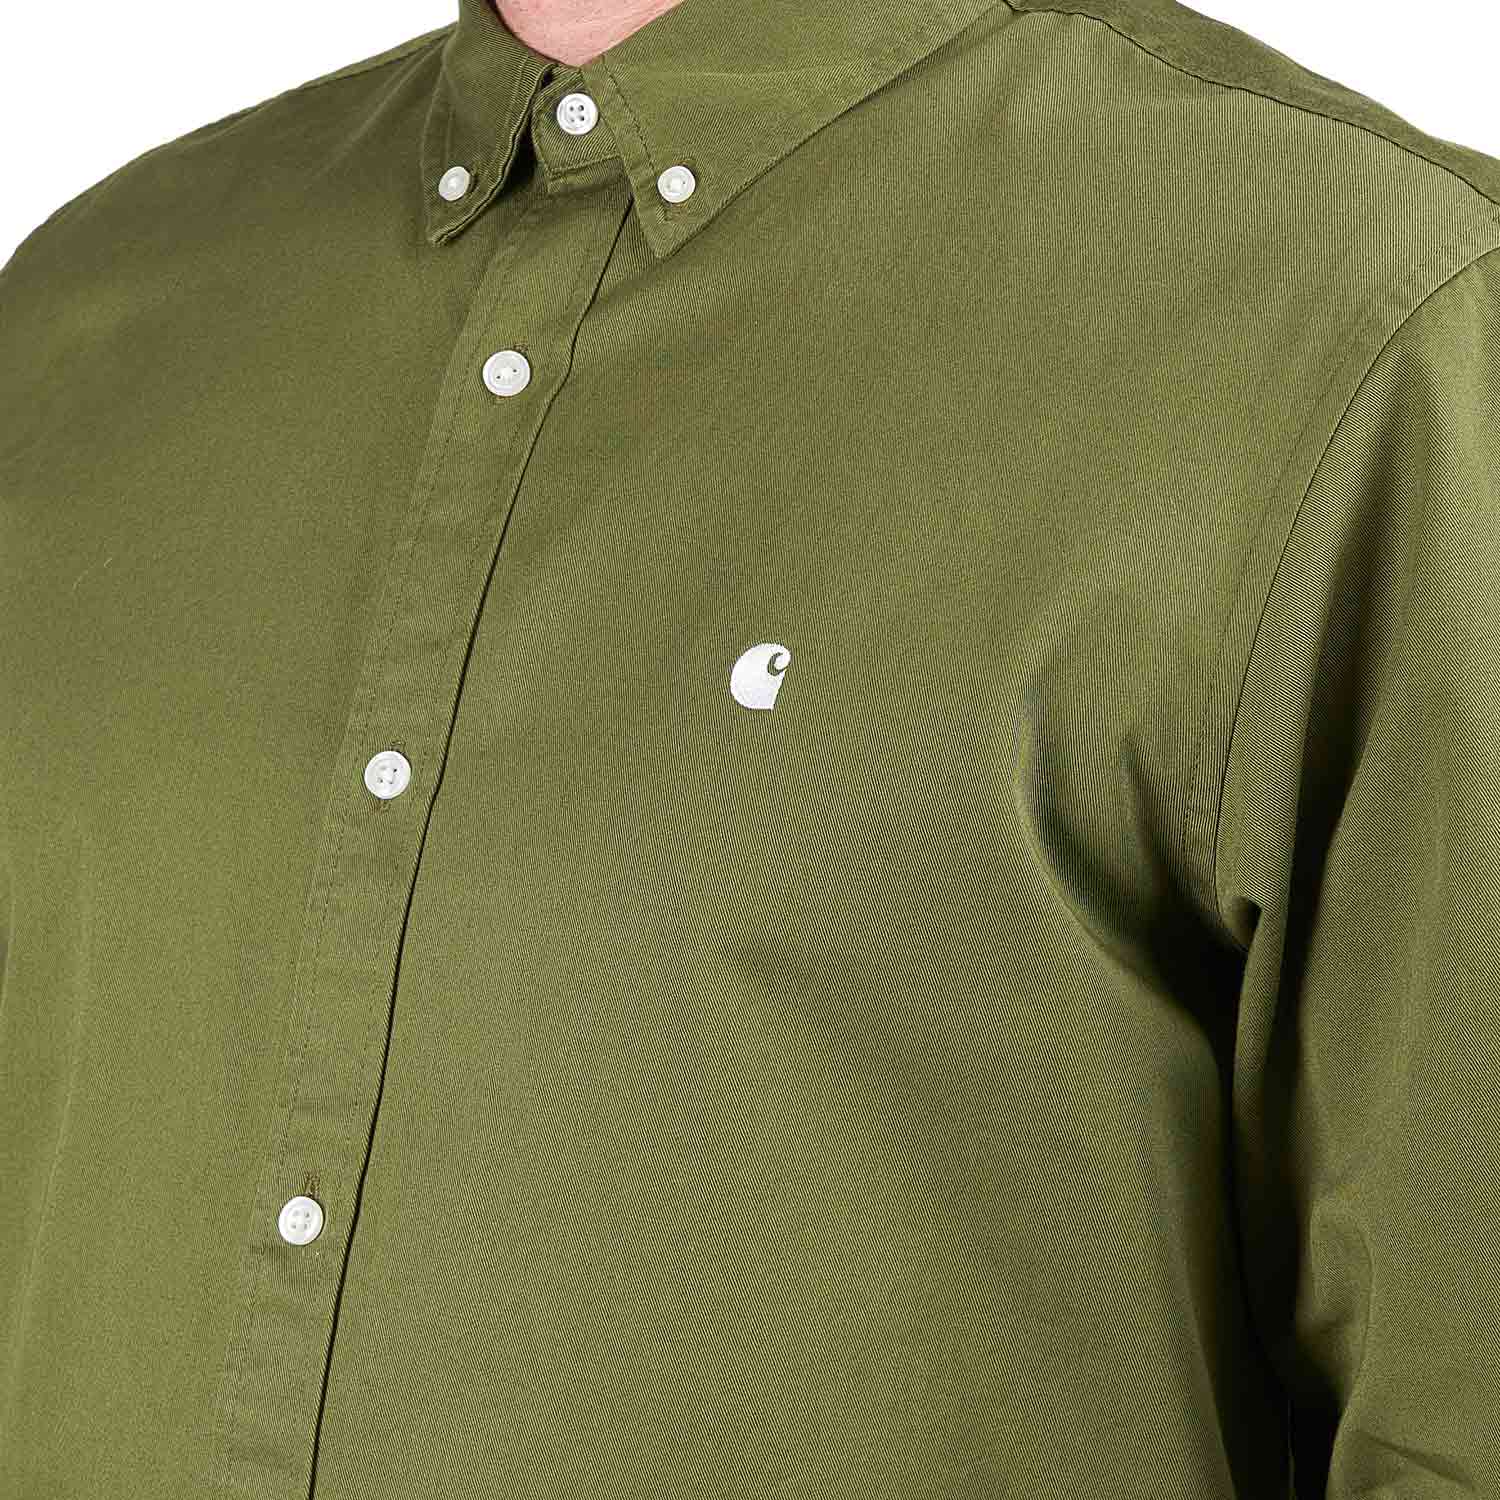 Carhartt WIP L/S Madison Shirt (Grün)  - Allike Store